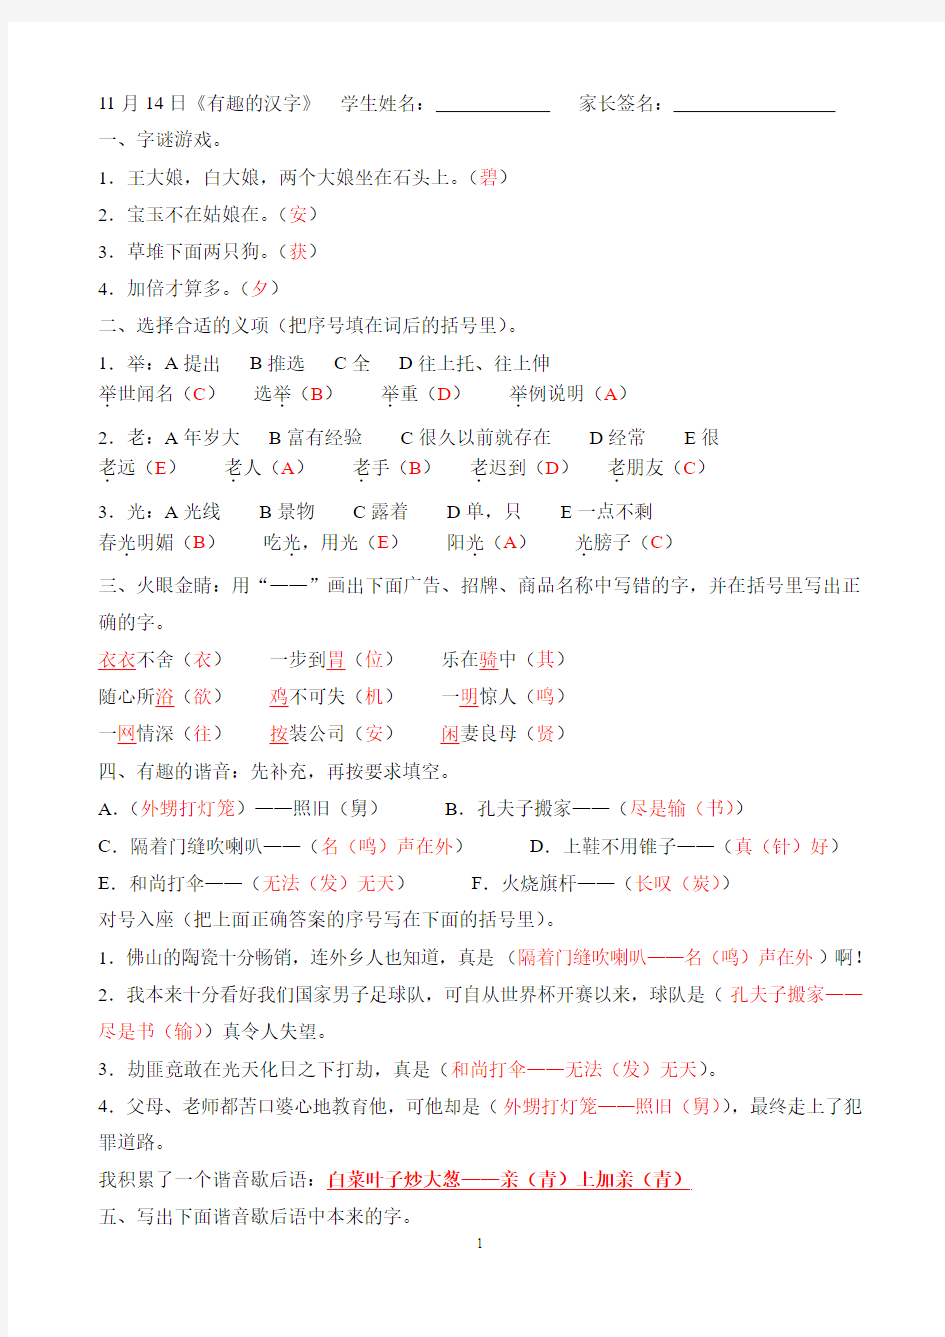 11月14日综合性学习《有趣的汉字》答案